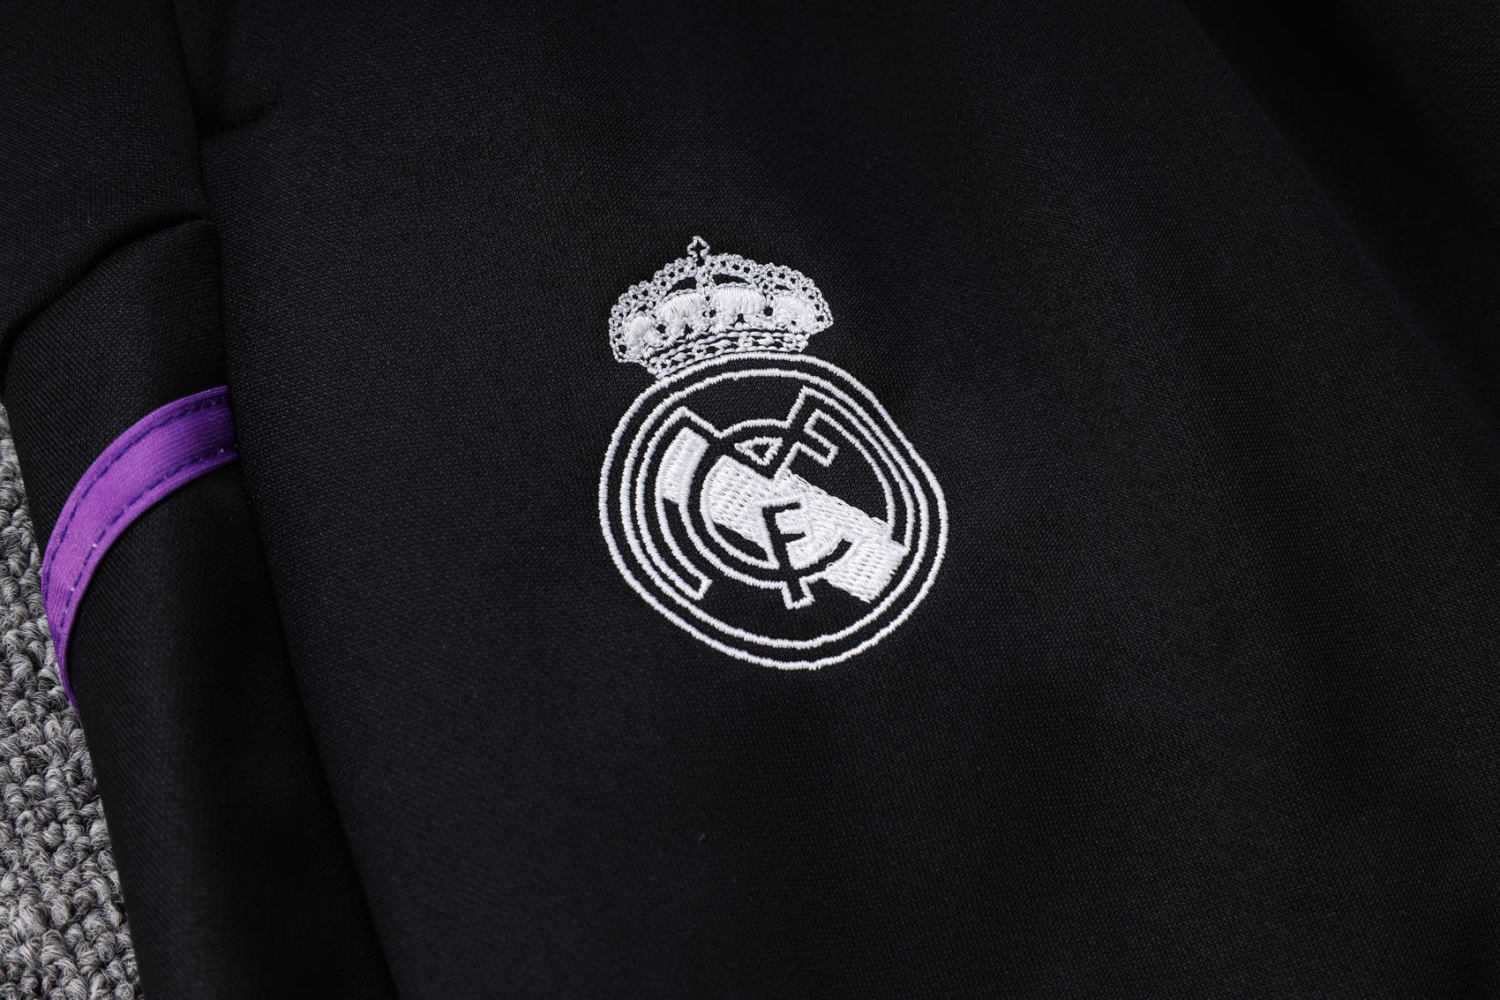 Real Madrid Soccer Jacket + Pants Replica White 2022/23 Mens (Hoodie)